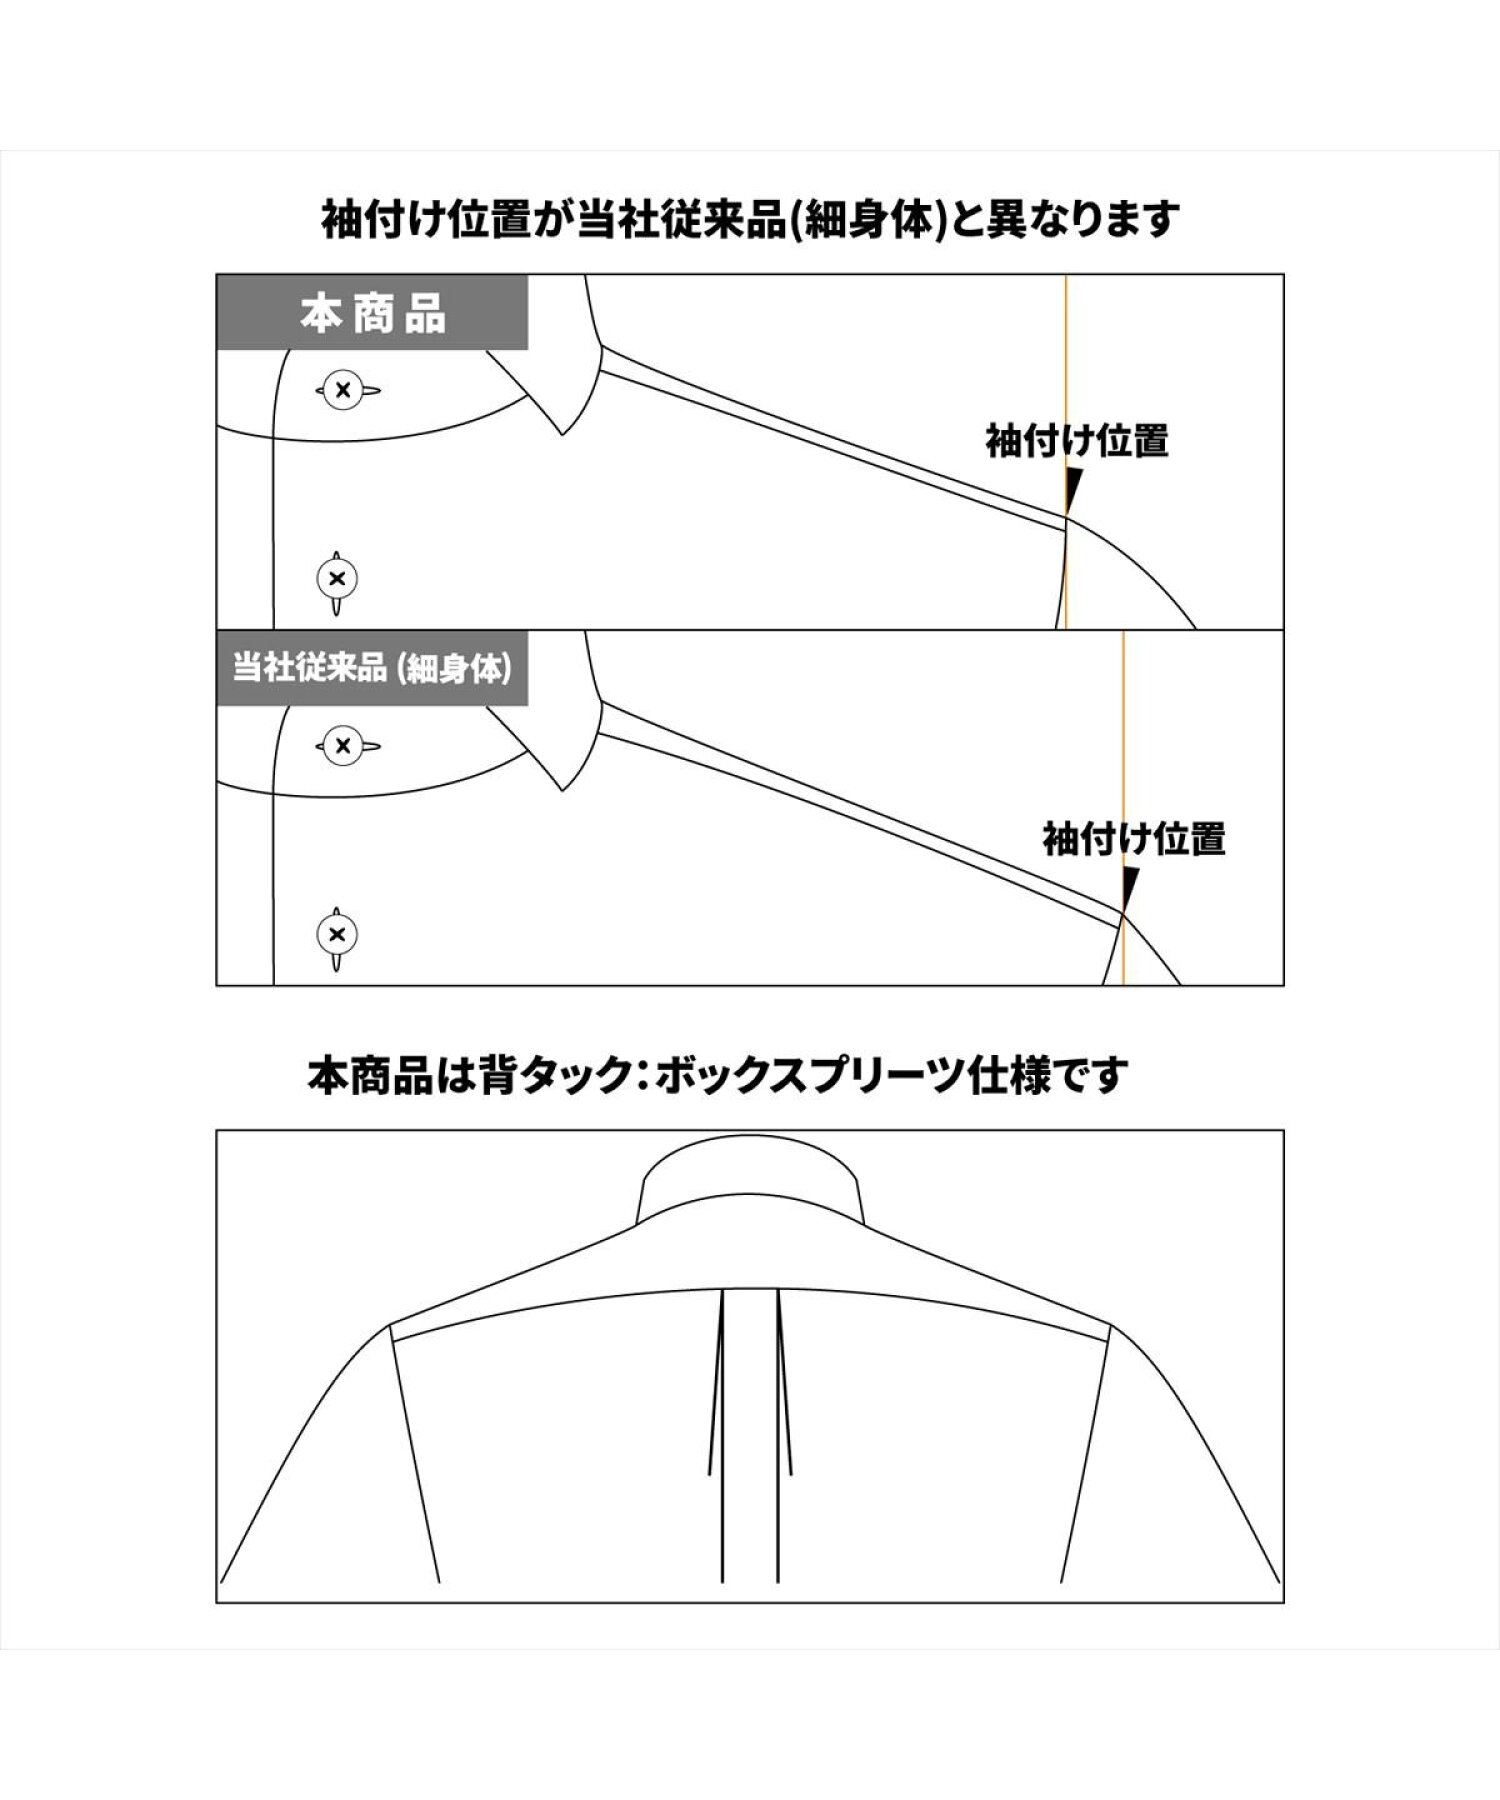 【国産しゃれシャツ】形態安定 ショートボタンダウン 綿100% 長袖ワイシャツ